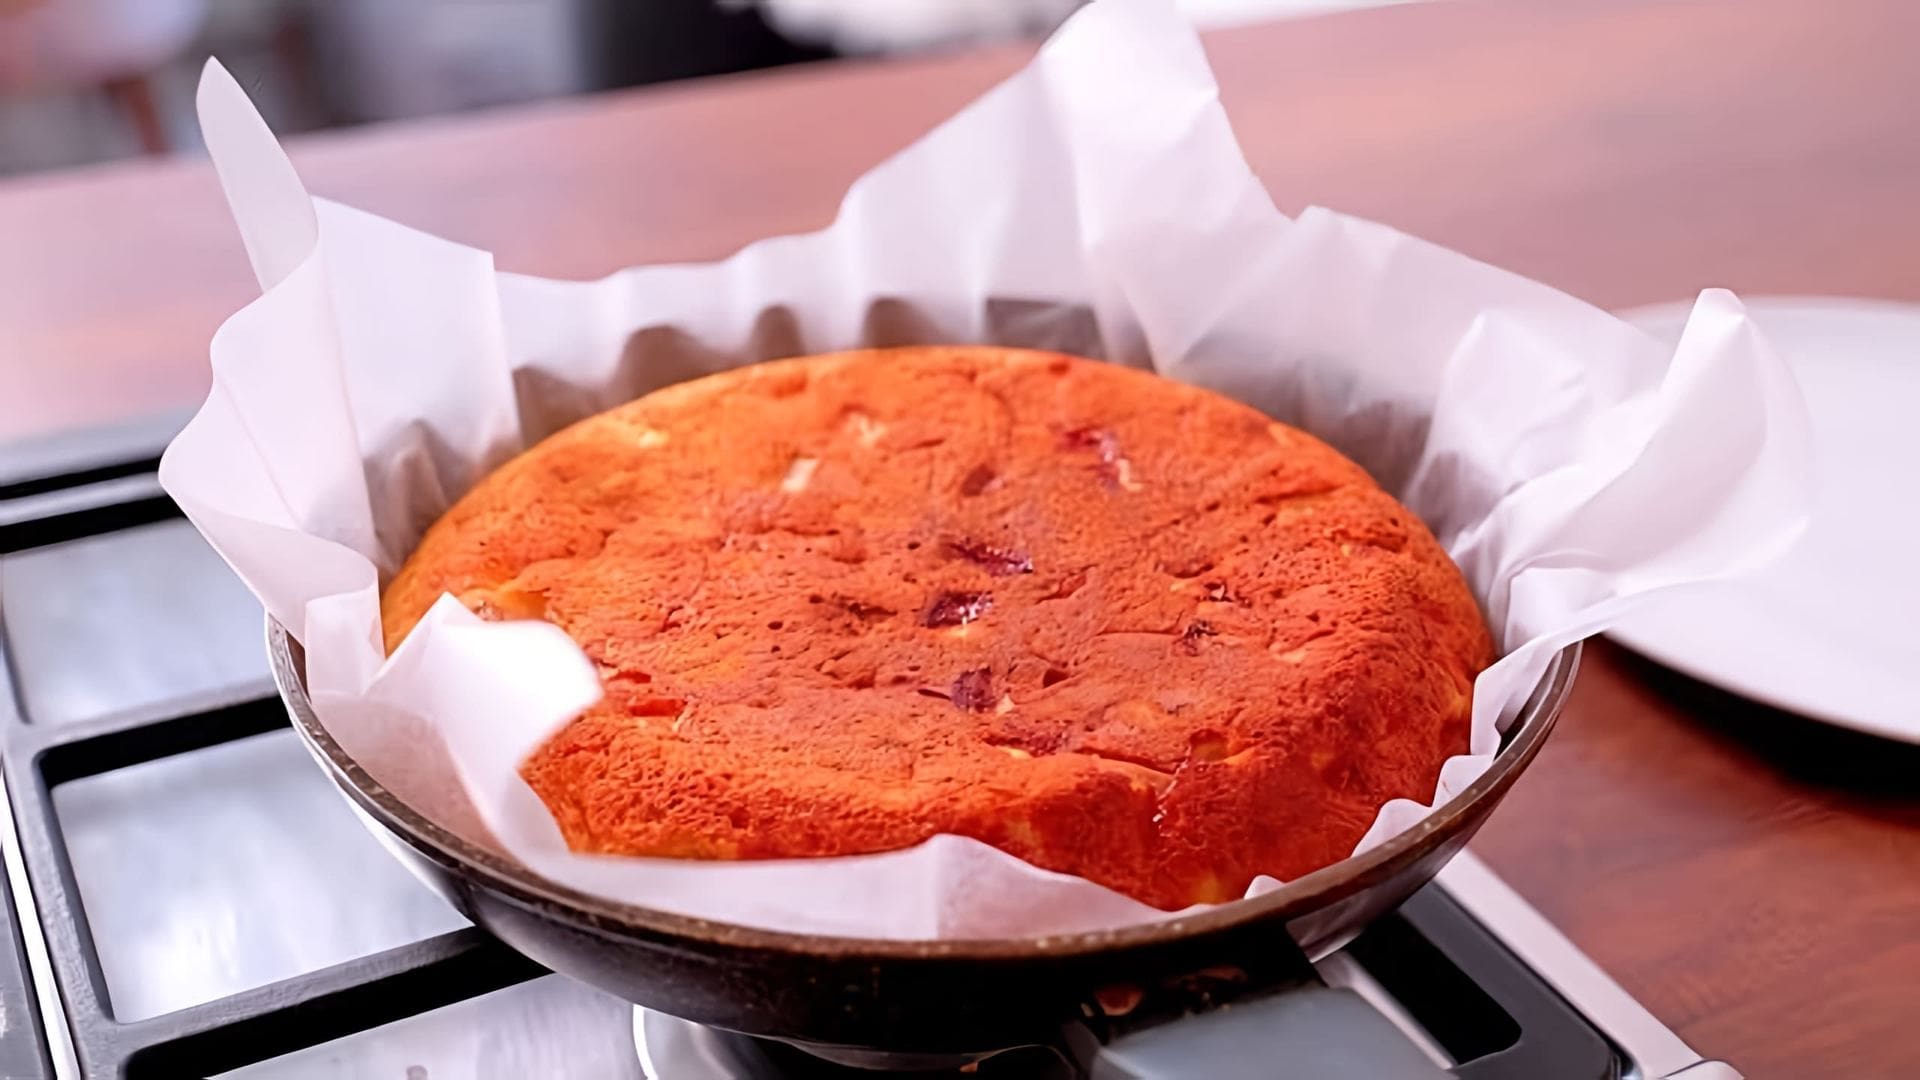 В этом видео демонстрируется рецепт яблочного пирога, который готовится без использования духовки